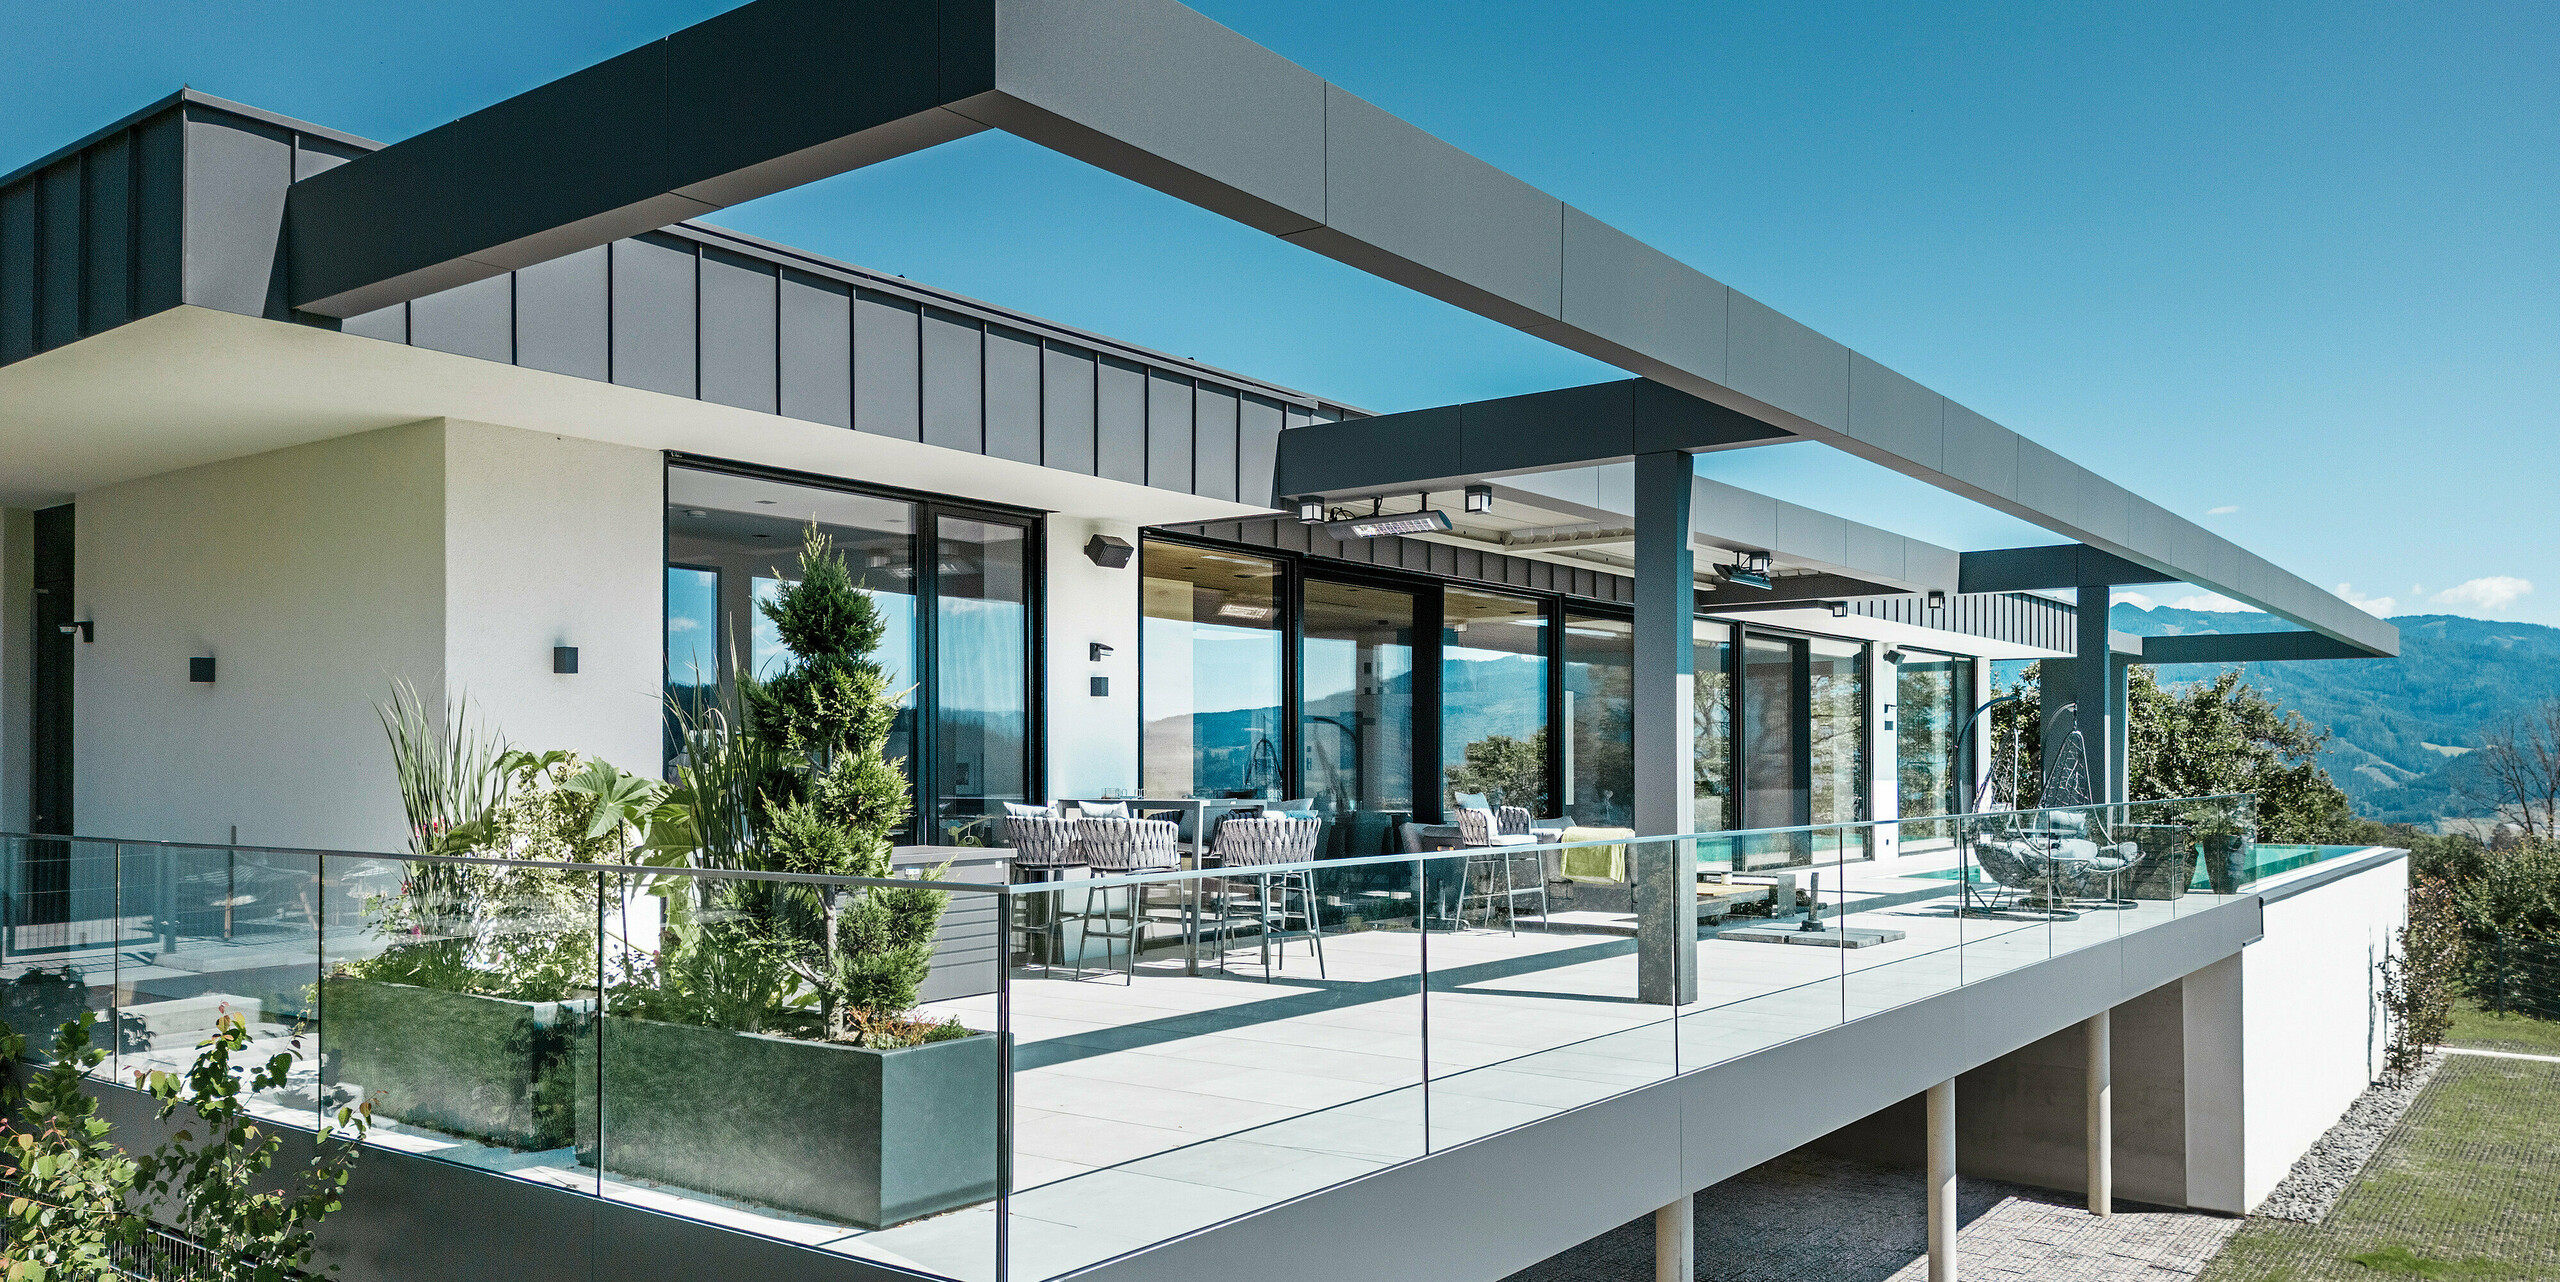 Luxuriöse Terrasse eines Einfamilienhauses in Pogier, Österreich mit eleganten Dach- und Fassadensystemen von PREFA. Die Kombination von PREFALZ und PREFABOND in dunkelgrau ergibt ein modernes und anspruchsvolles Design. Die großzügige Terrasse bietet einen atemberaubenden Ausblick und ist mit einem Glasgeländer ausgestattet, das eine offene und einladende Atmosphäre schafft. Der teilweise überdachte Außenbereich lässt die Schönheit der umliegenden Natur genießen und ist ideal zum Entspannen und geselligen Beisammensein.